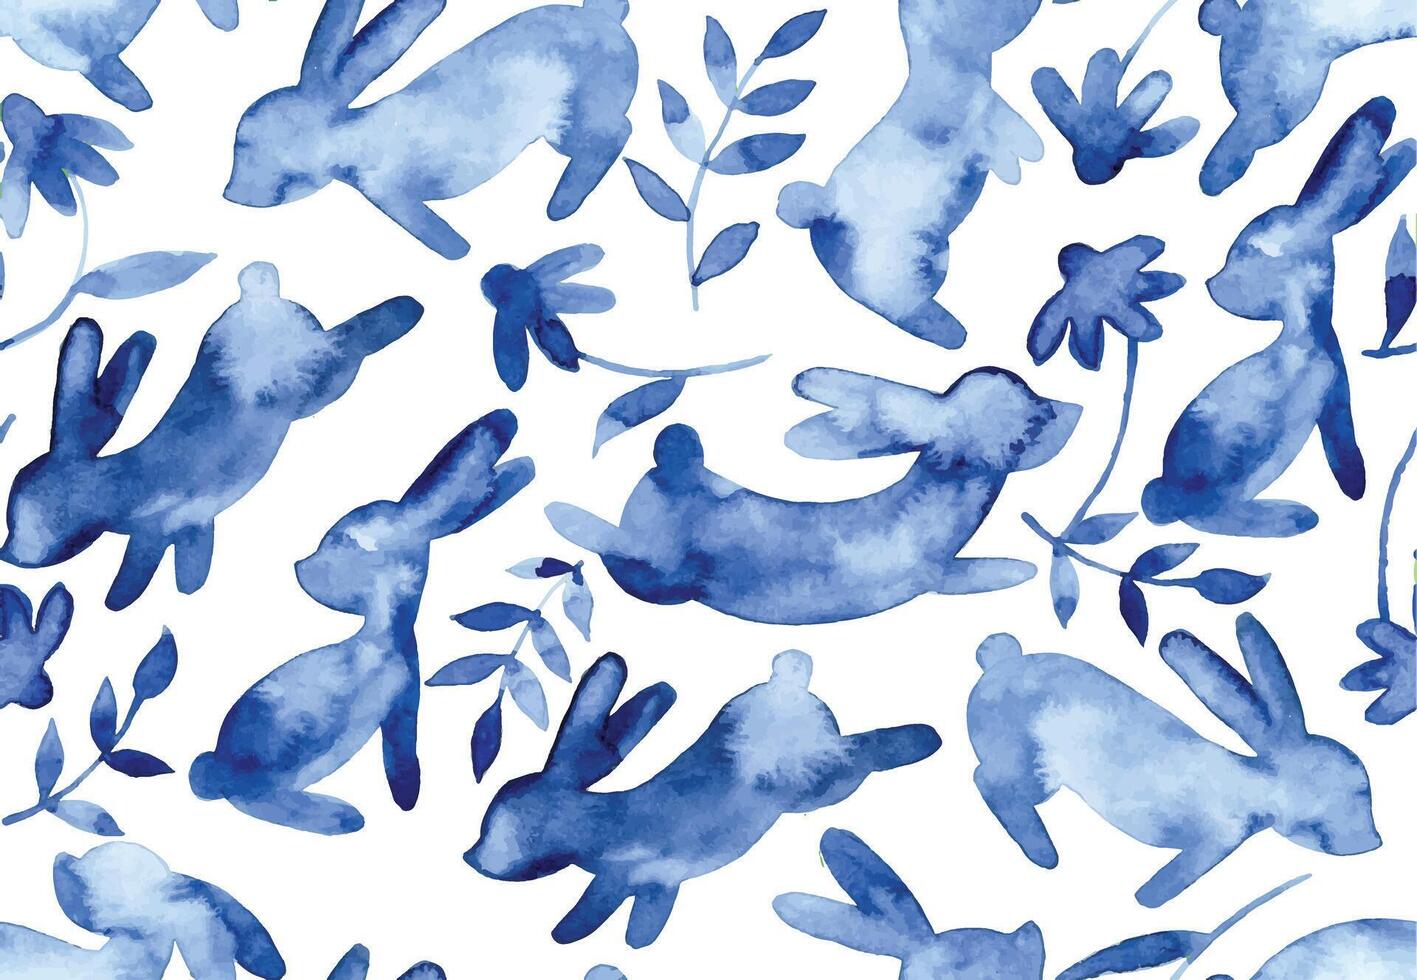 desatado padronizar com silhuetas do Páscoa coelhos e flores azul aguarela desenhando vetor